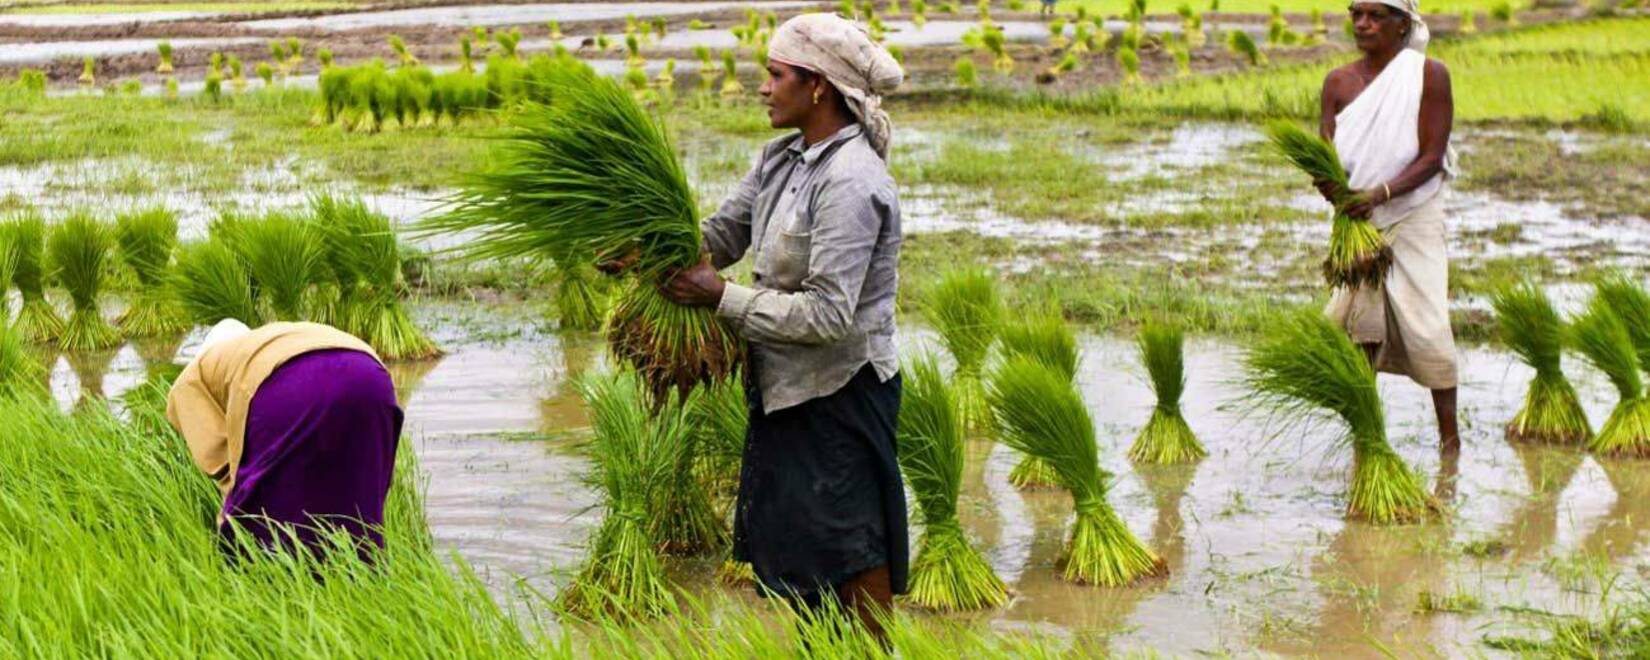 Индия согласилась возобновить экспорт риса в Сингапур после запроса на 110 тысяч тонн.